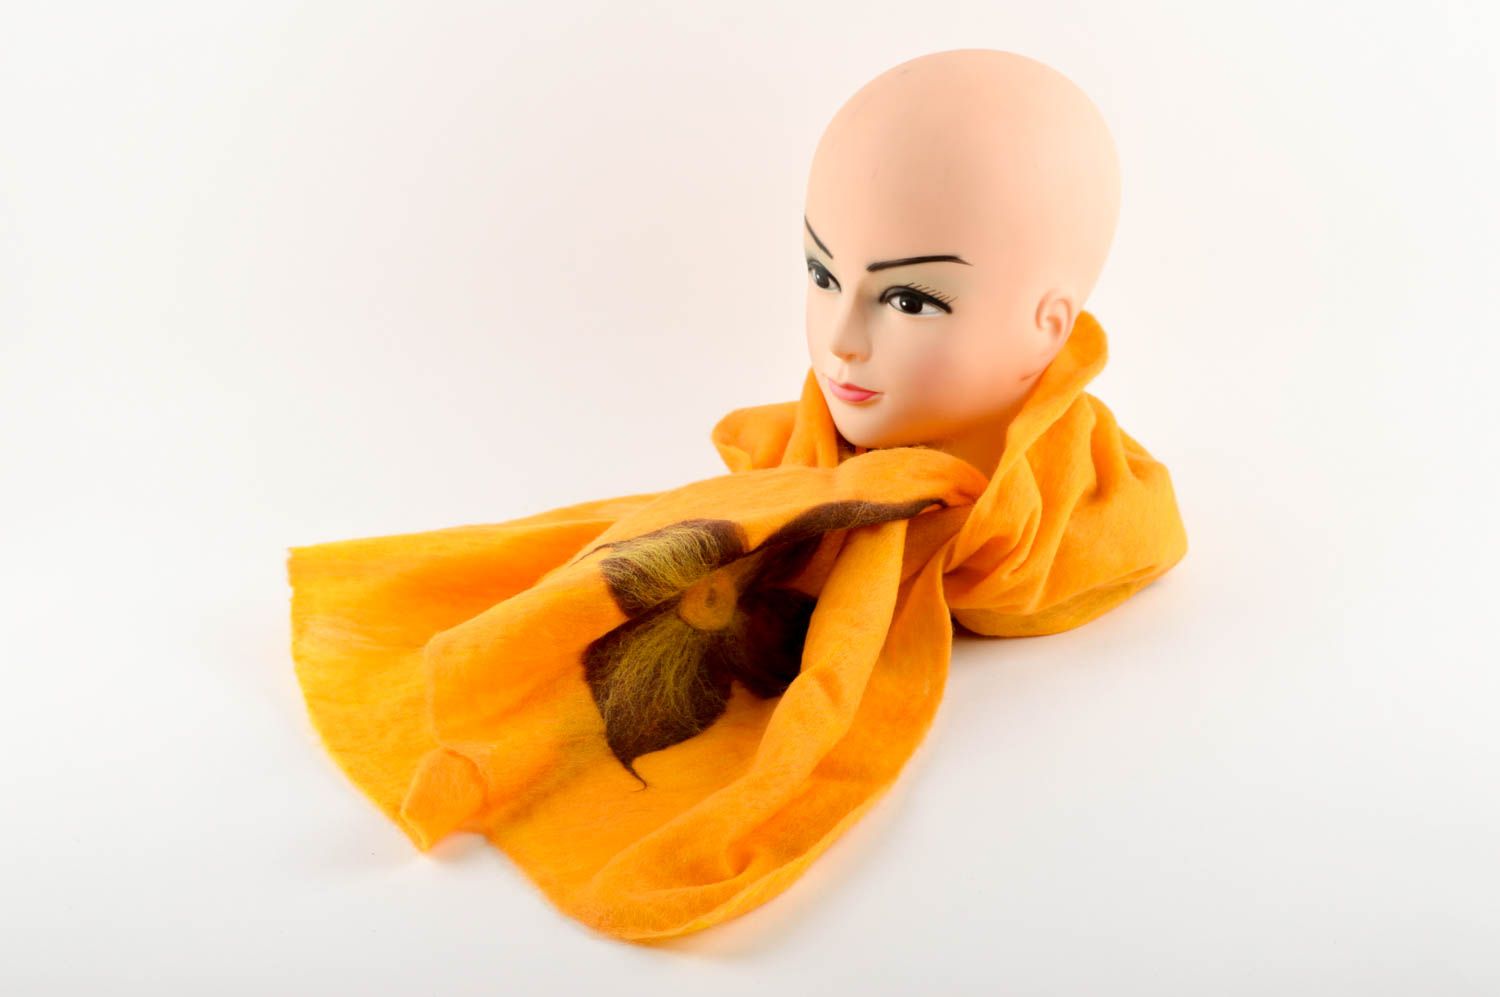 Handmade gefilzter Schal Frauen Accessoire schöner Schal aus Wolle gelb foto 1